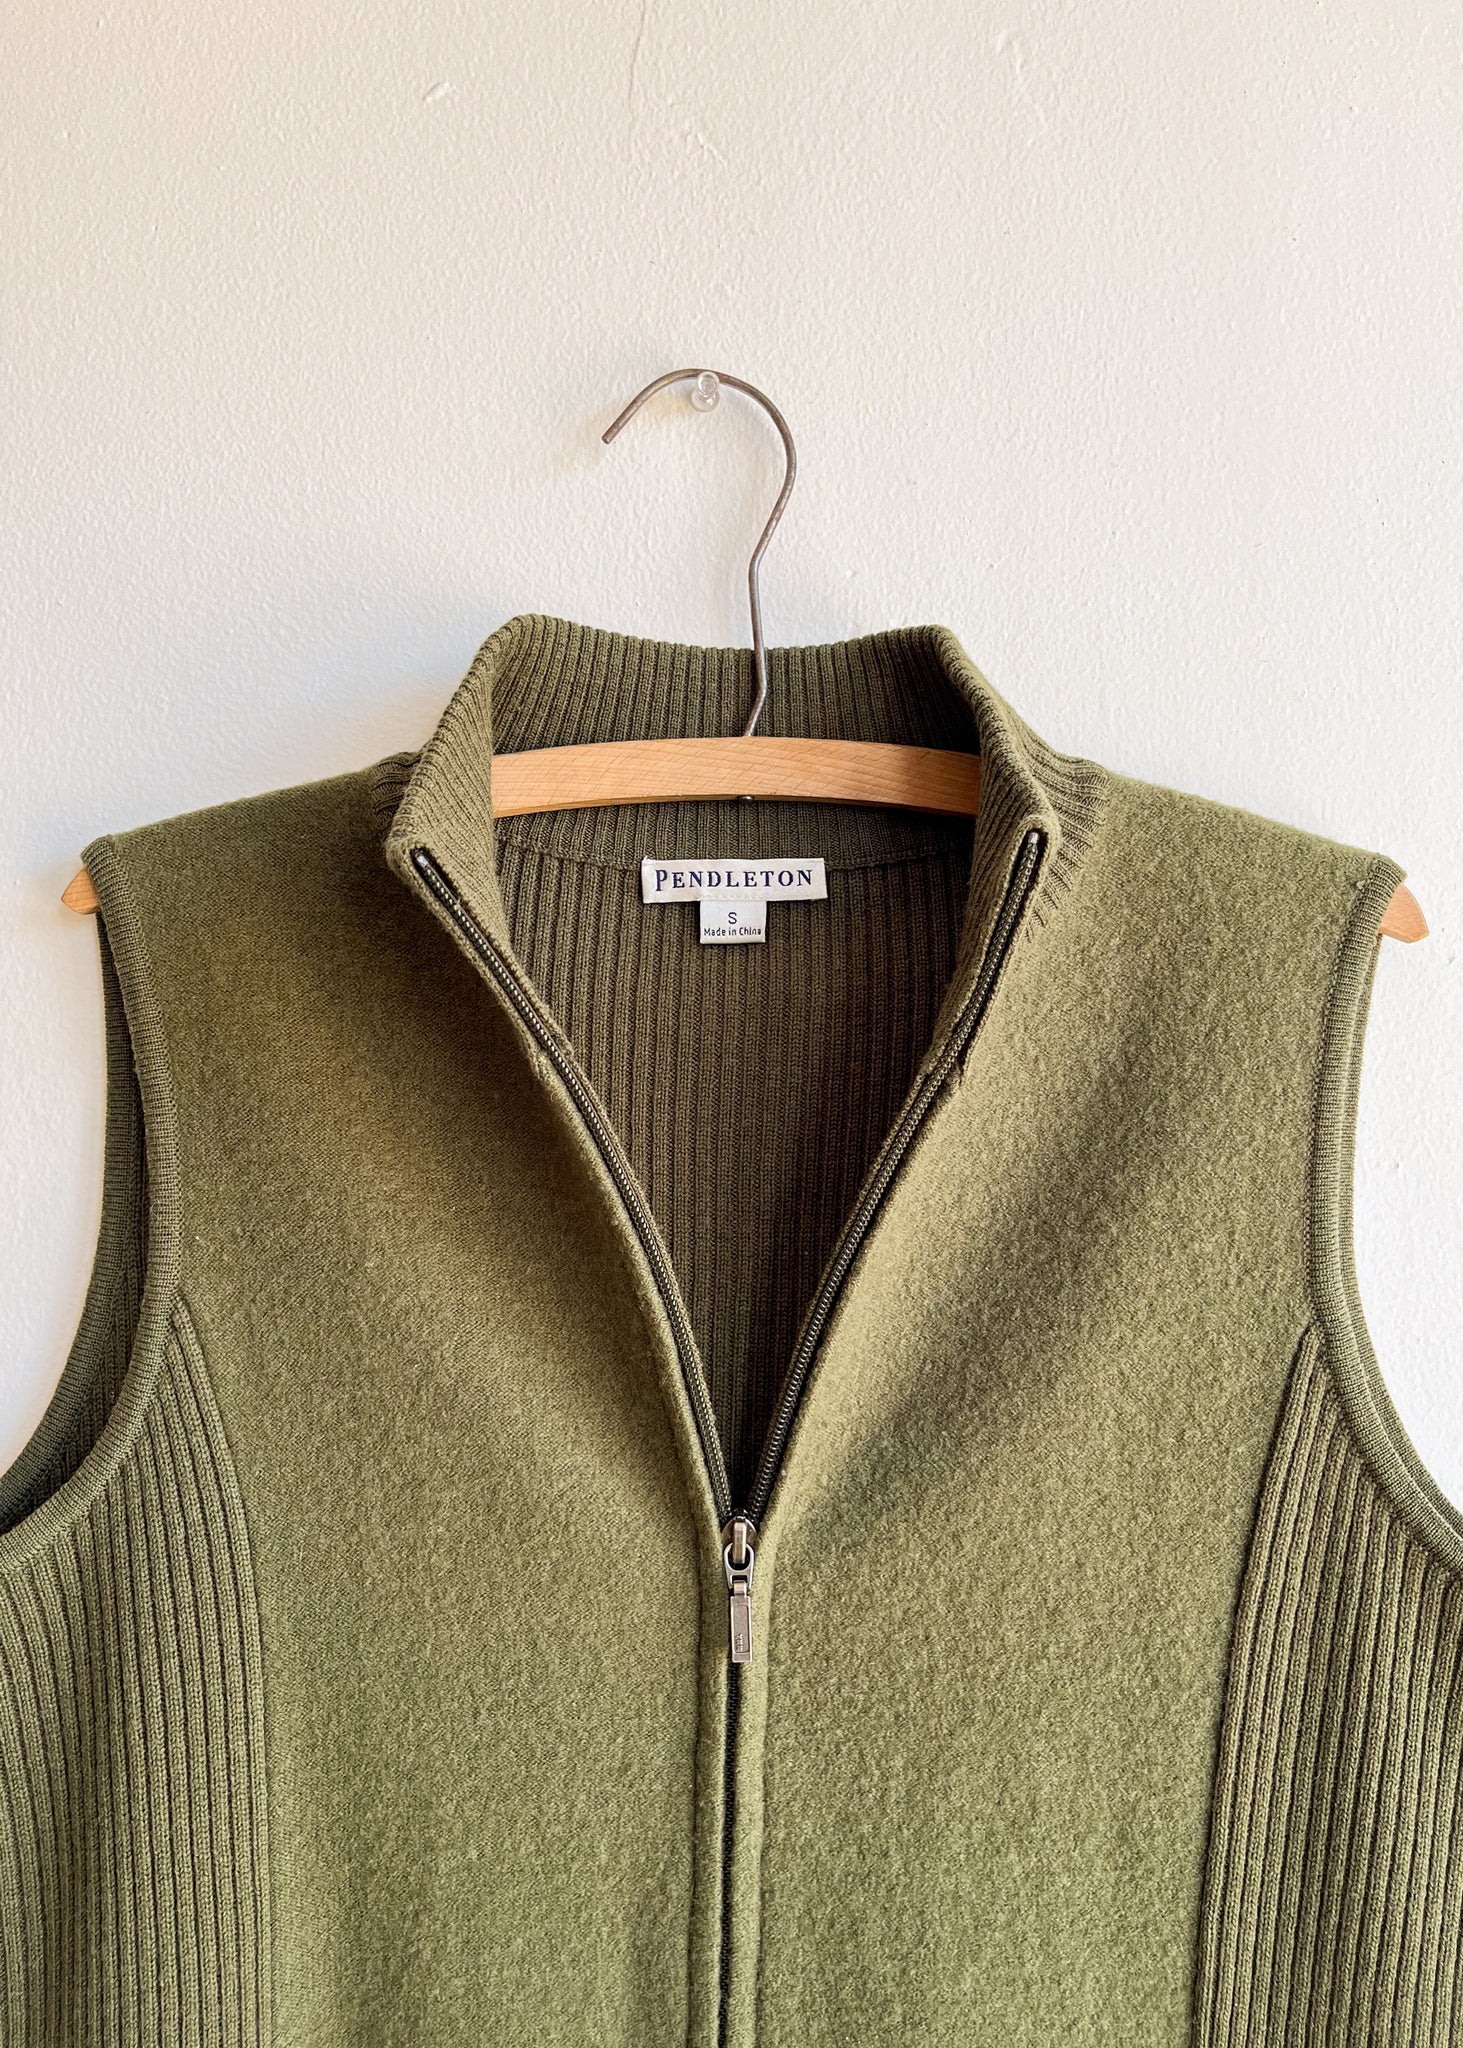 Green Wool Vest